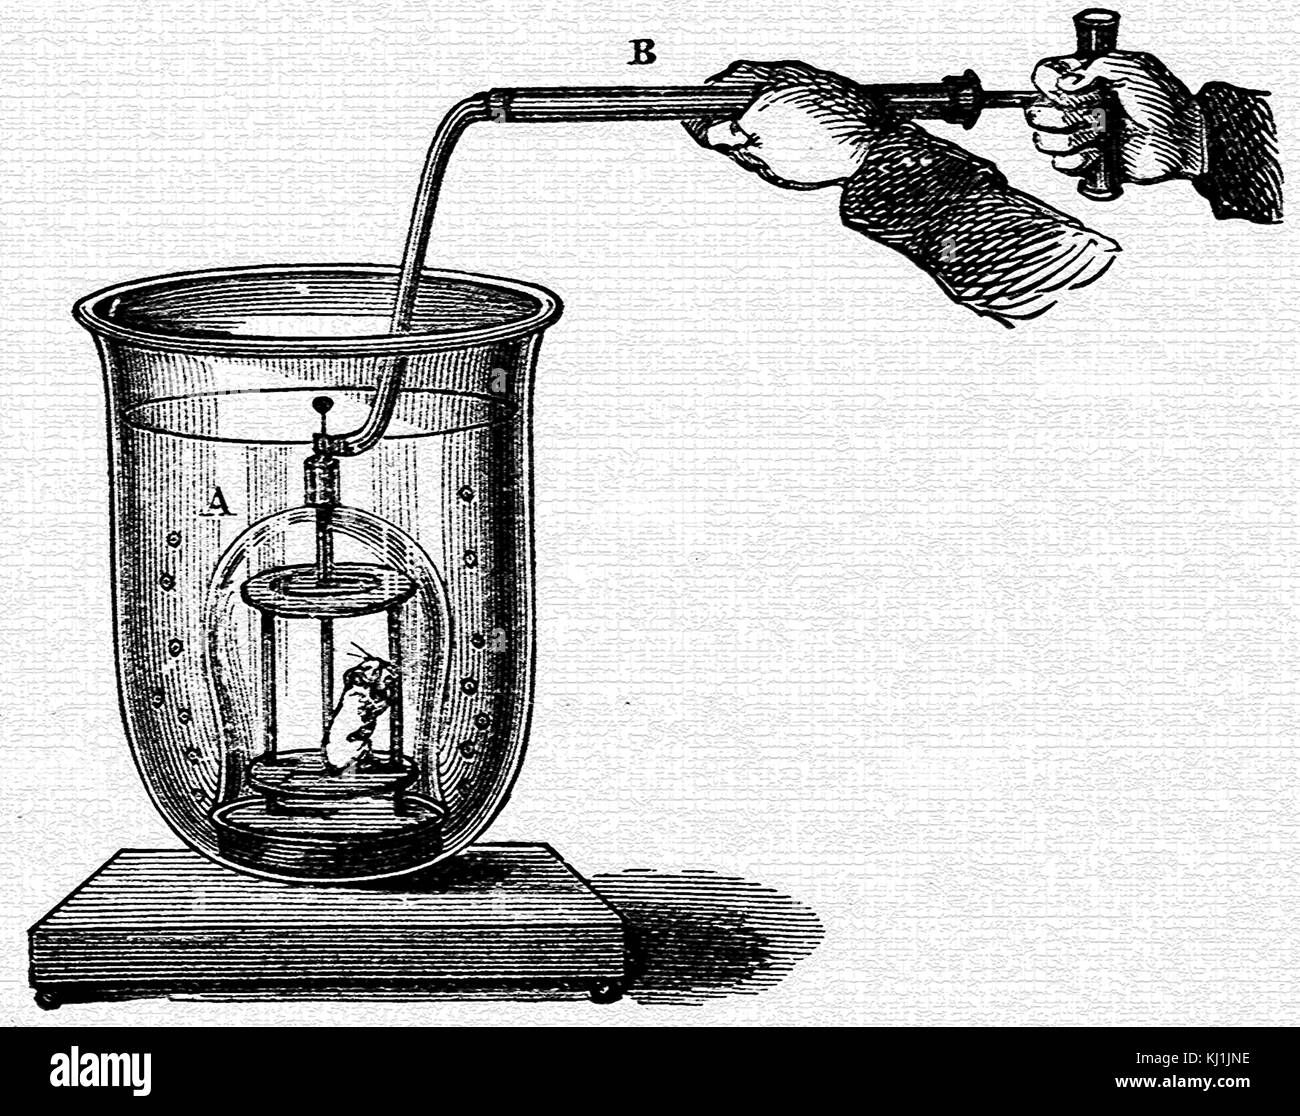 Kupferstich mit der Darstellung eines Miniatur Taucherglocke, die zeigen, wie ein brennwertkessel Pumpe Luft auf ein umgedrehtes Schiff umgeben von Wasser liefern können, die überschüssige Luft entweicht als blasen von unten. Vom 19. Jahrhundert Stockfoto